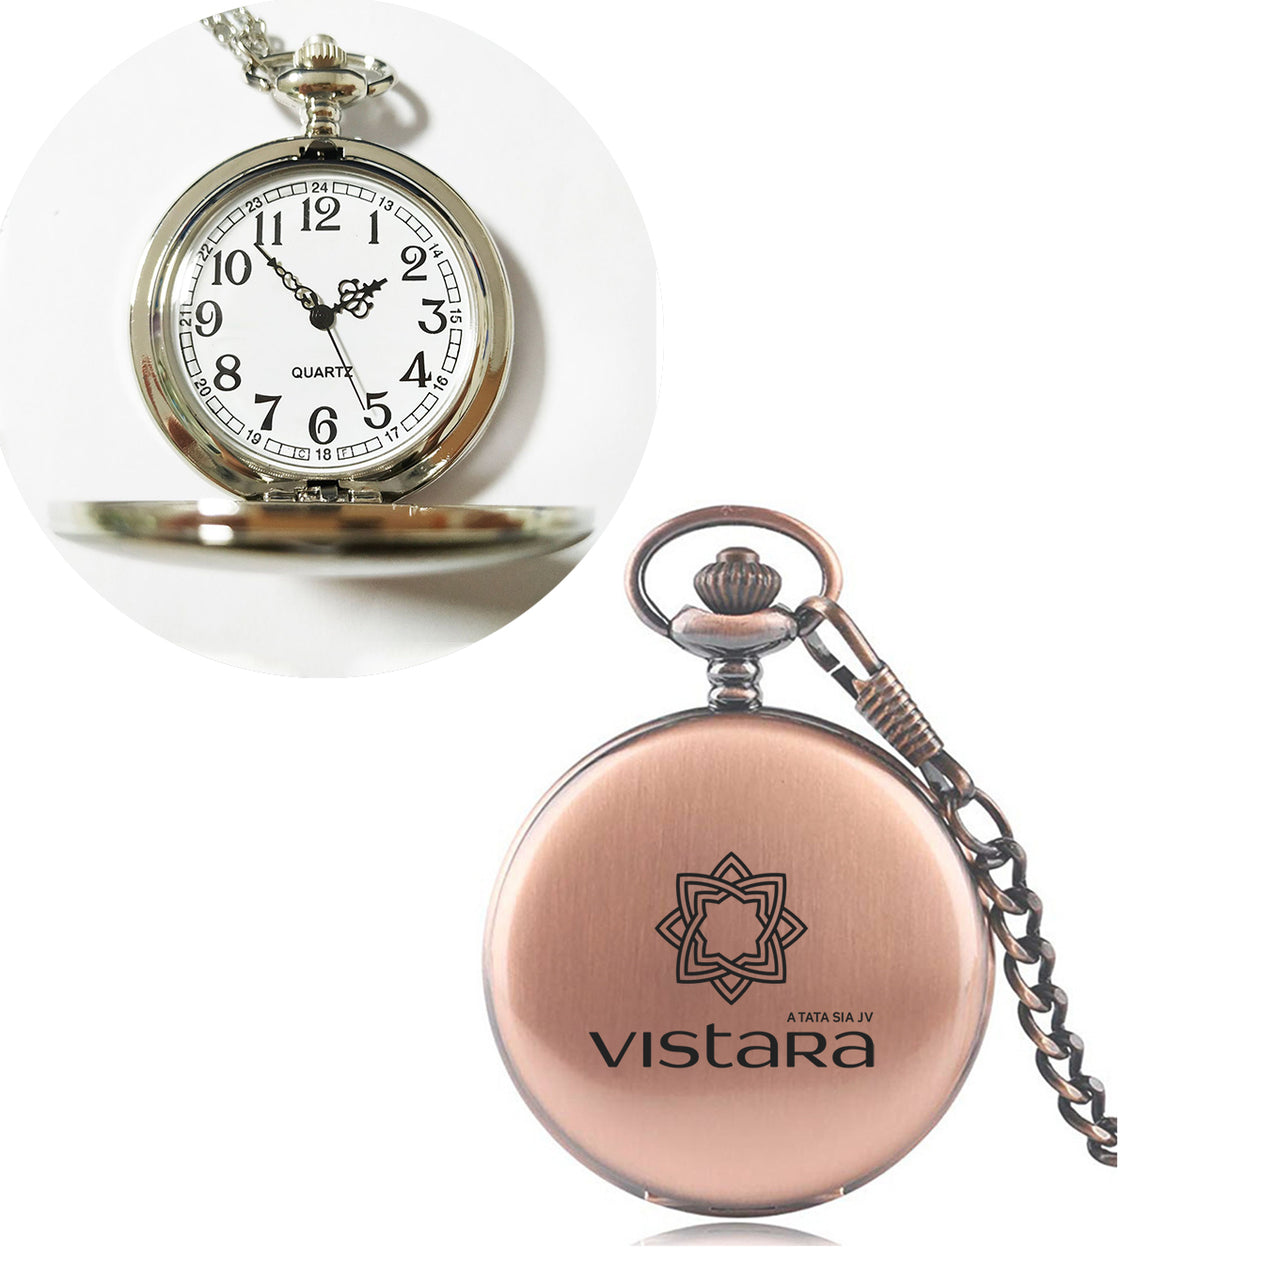 Vistara Airlines Designed Pocket Watches